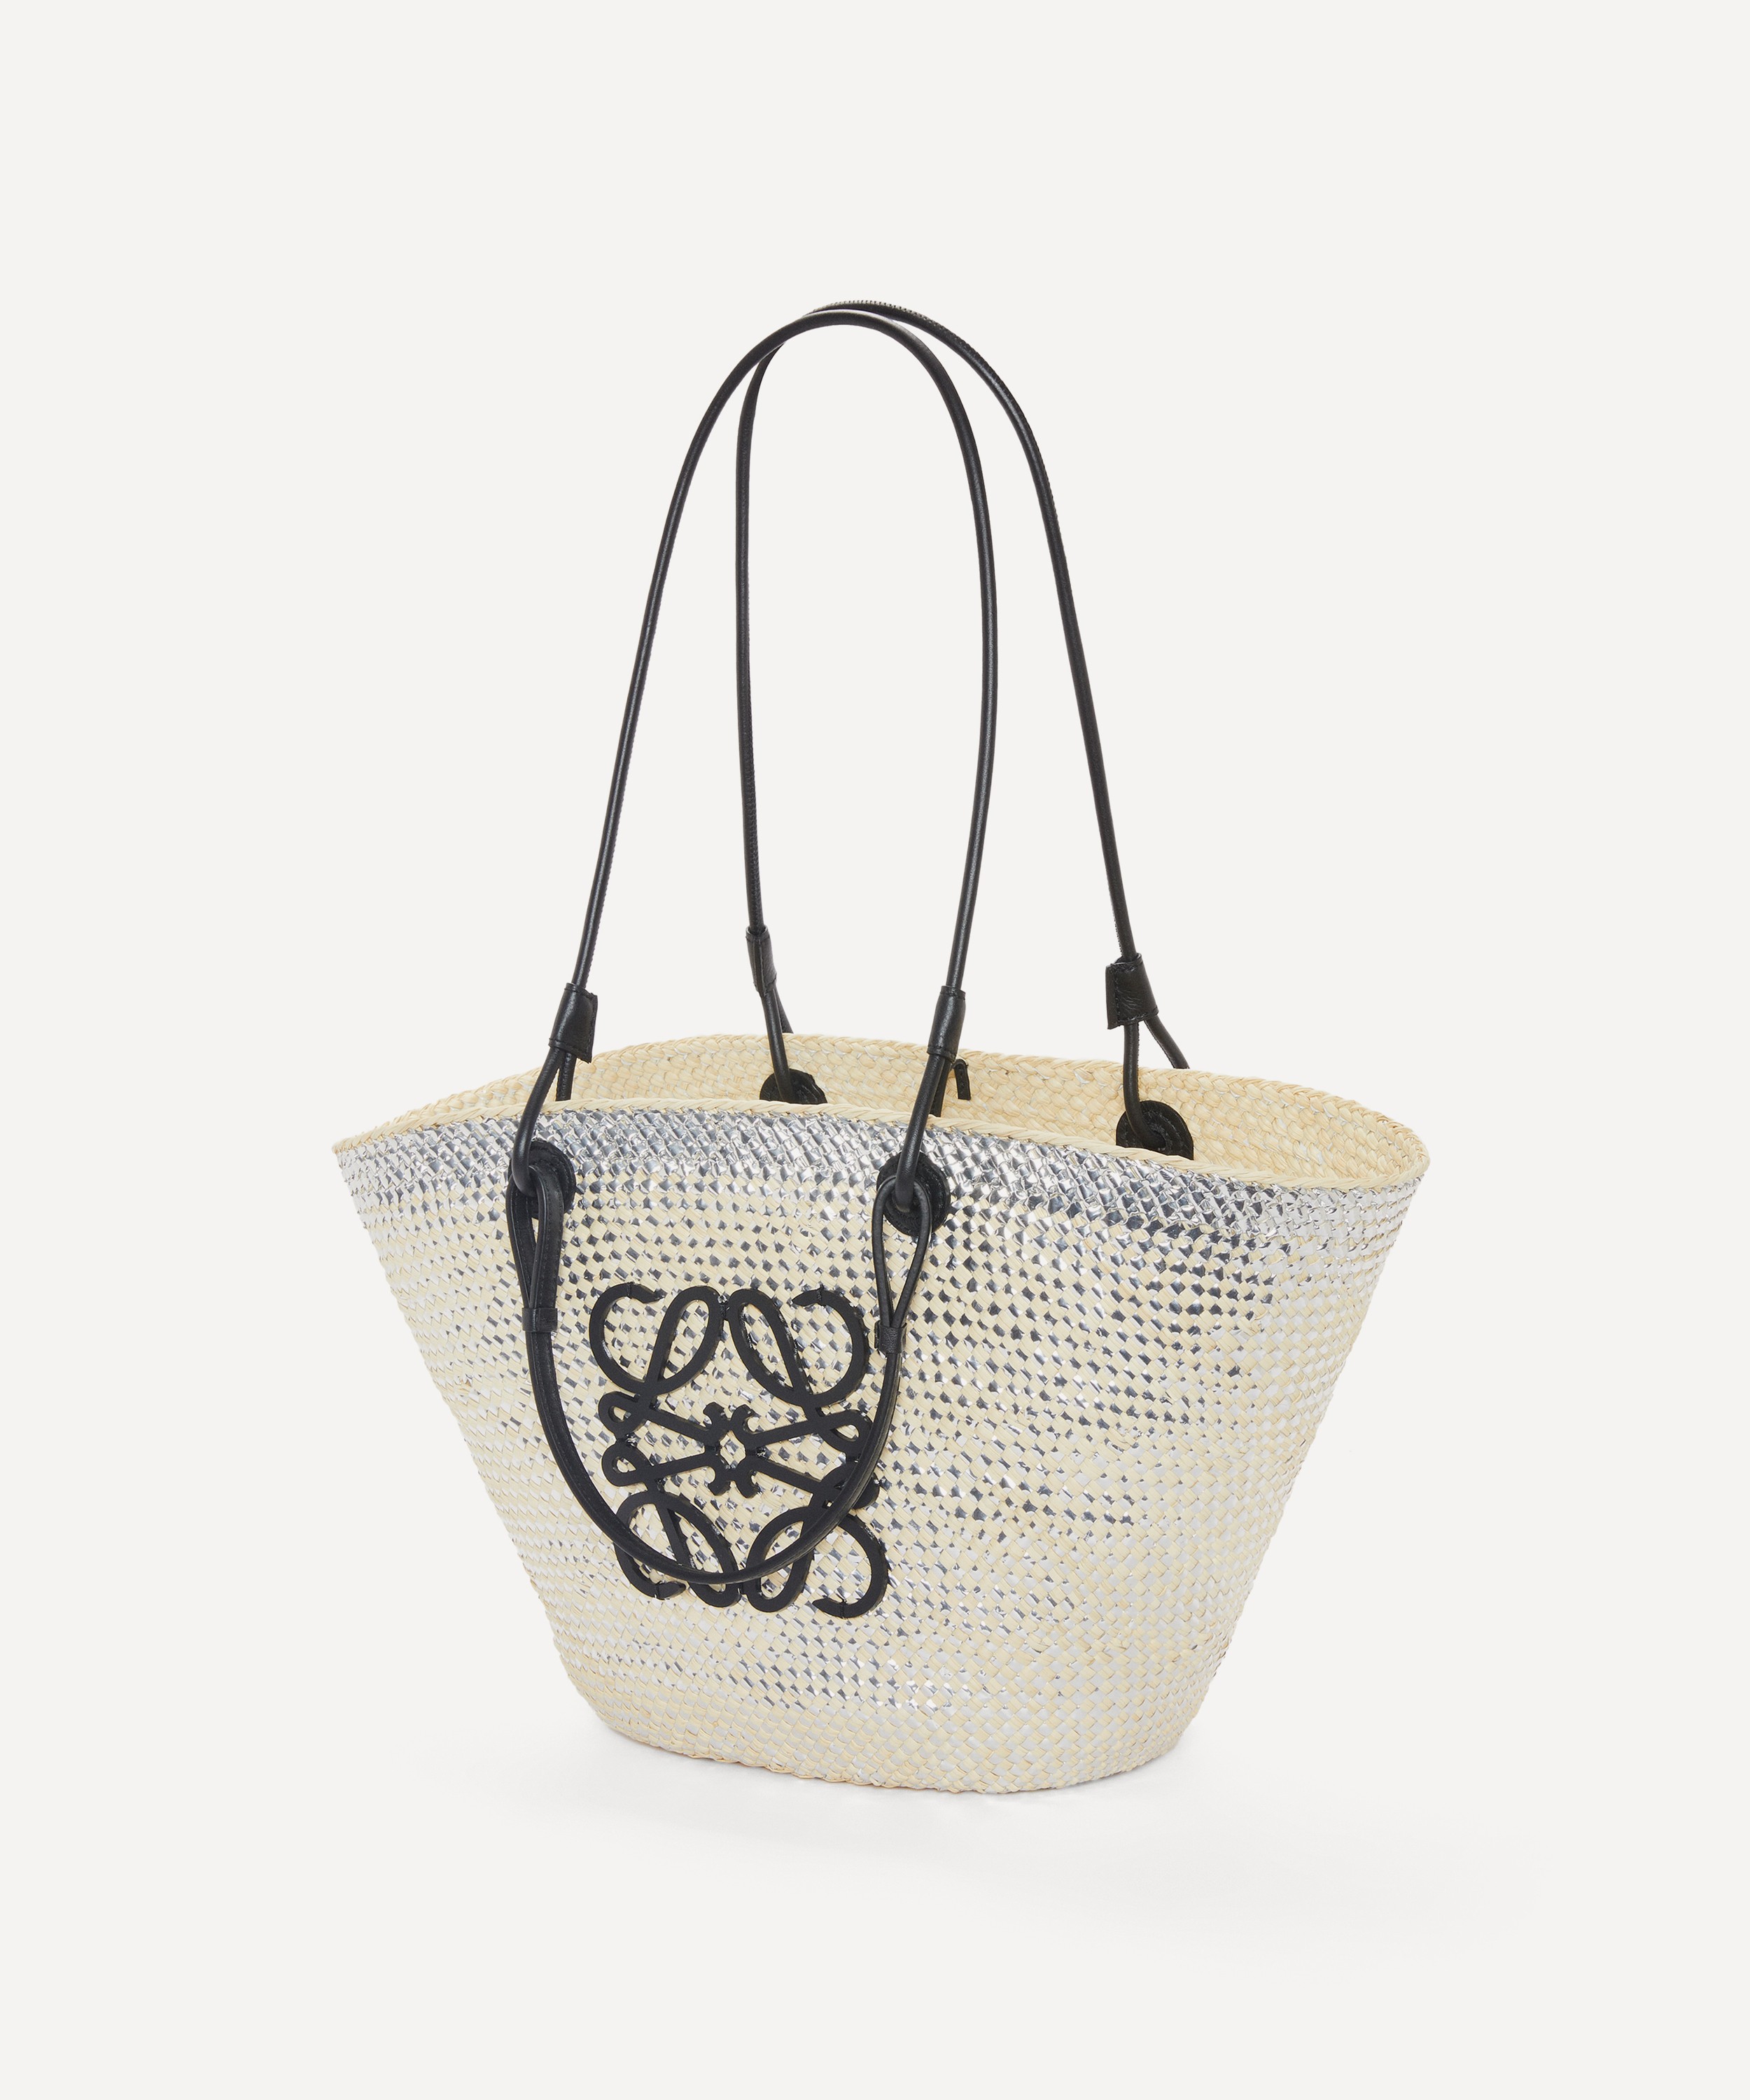 Loewe x Paula's Ibiza Sparkling Anagram Basket Bag